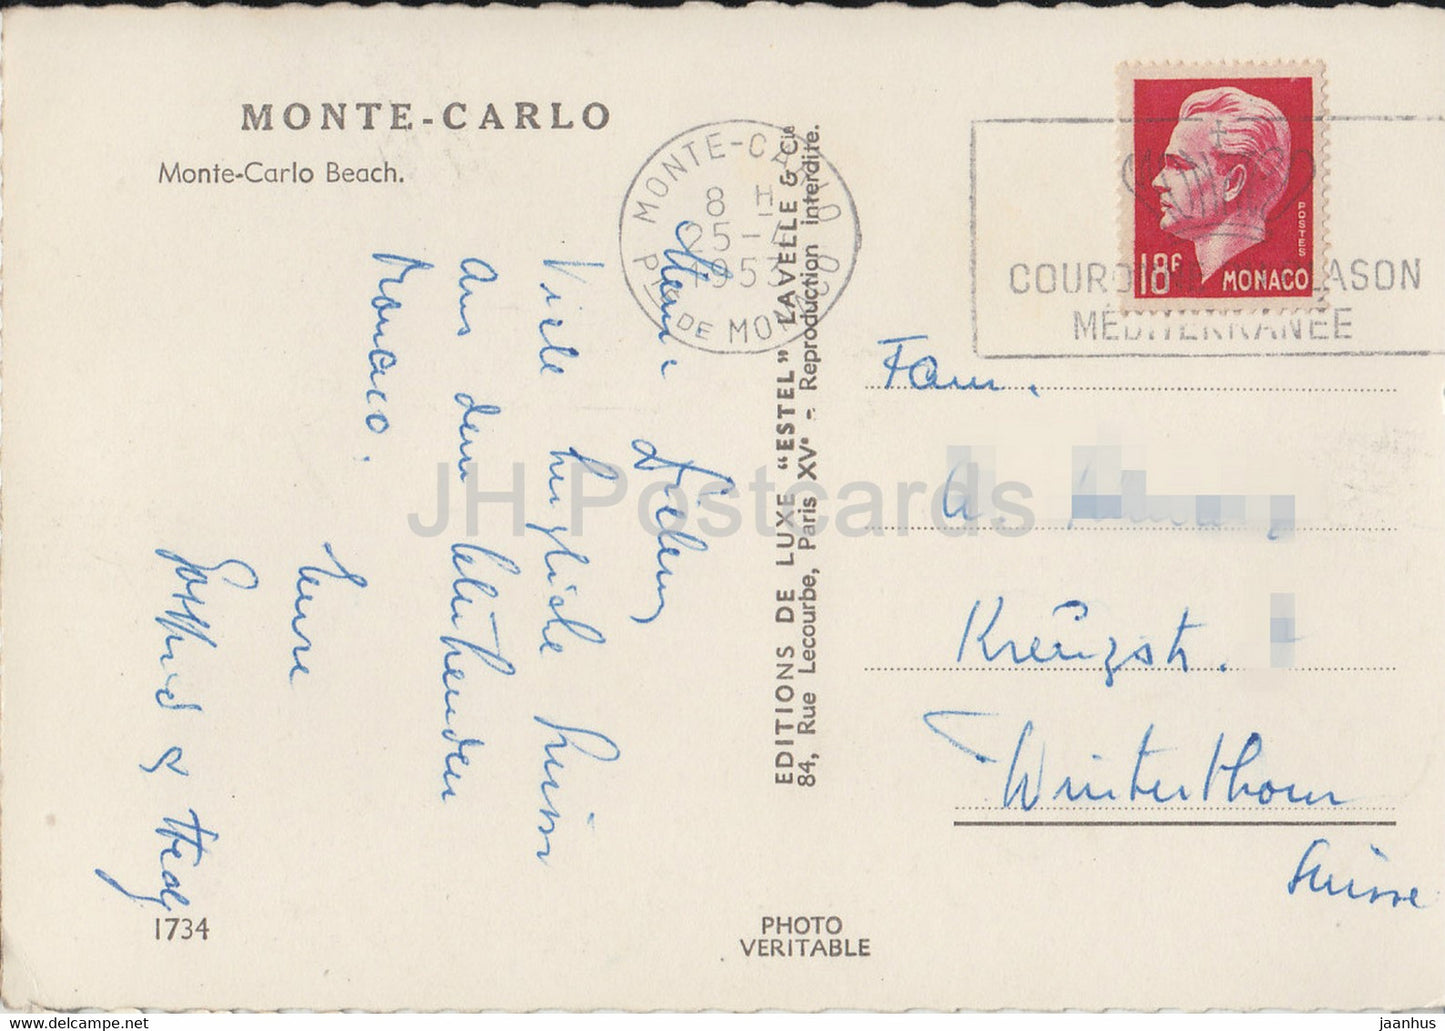 Monte Carlo Beach - carte postale ancienne - 1953 - Monaco - occasion